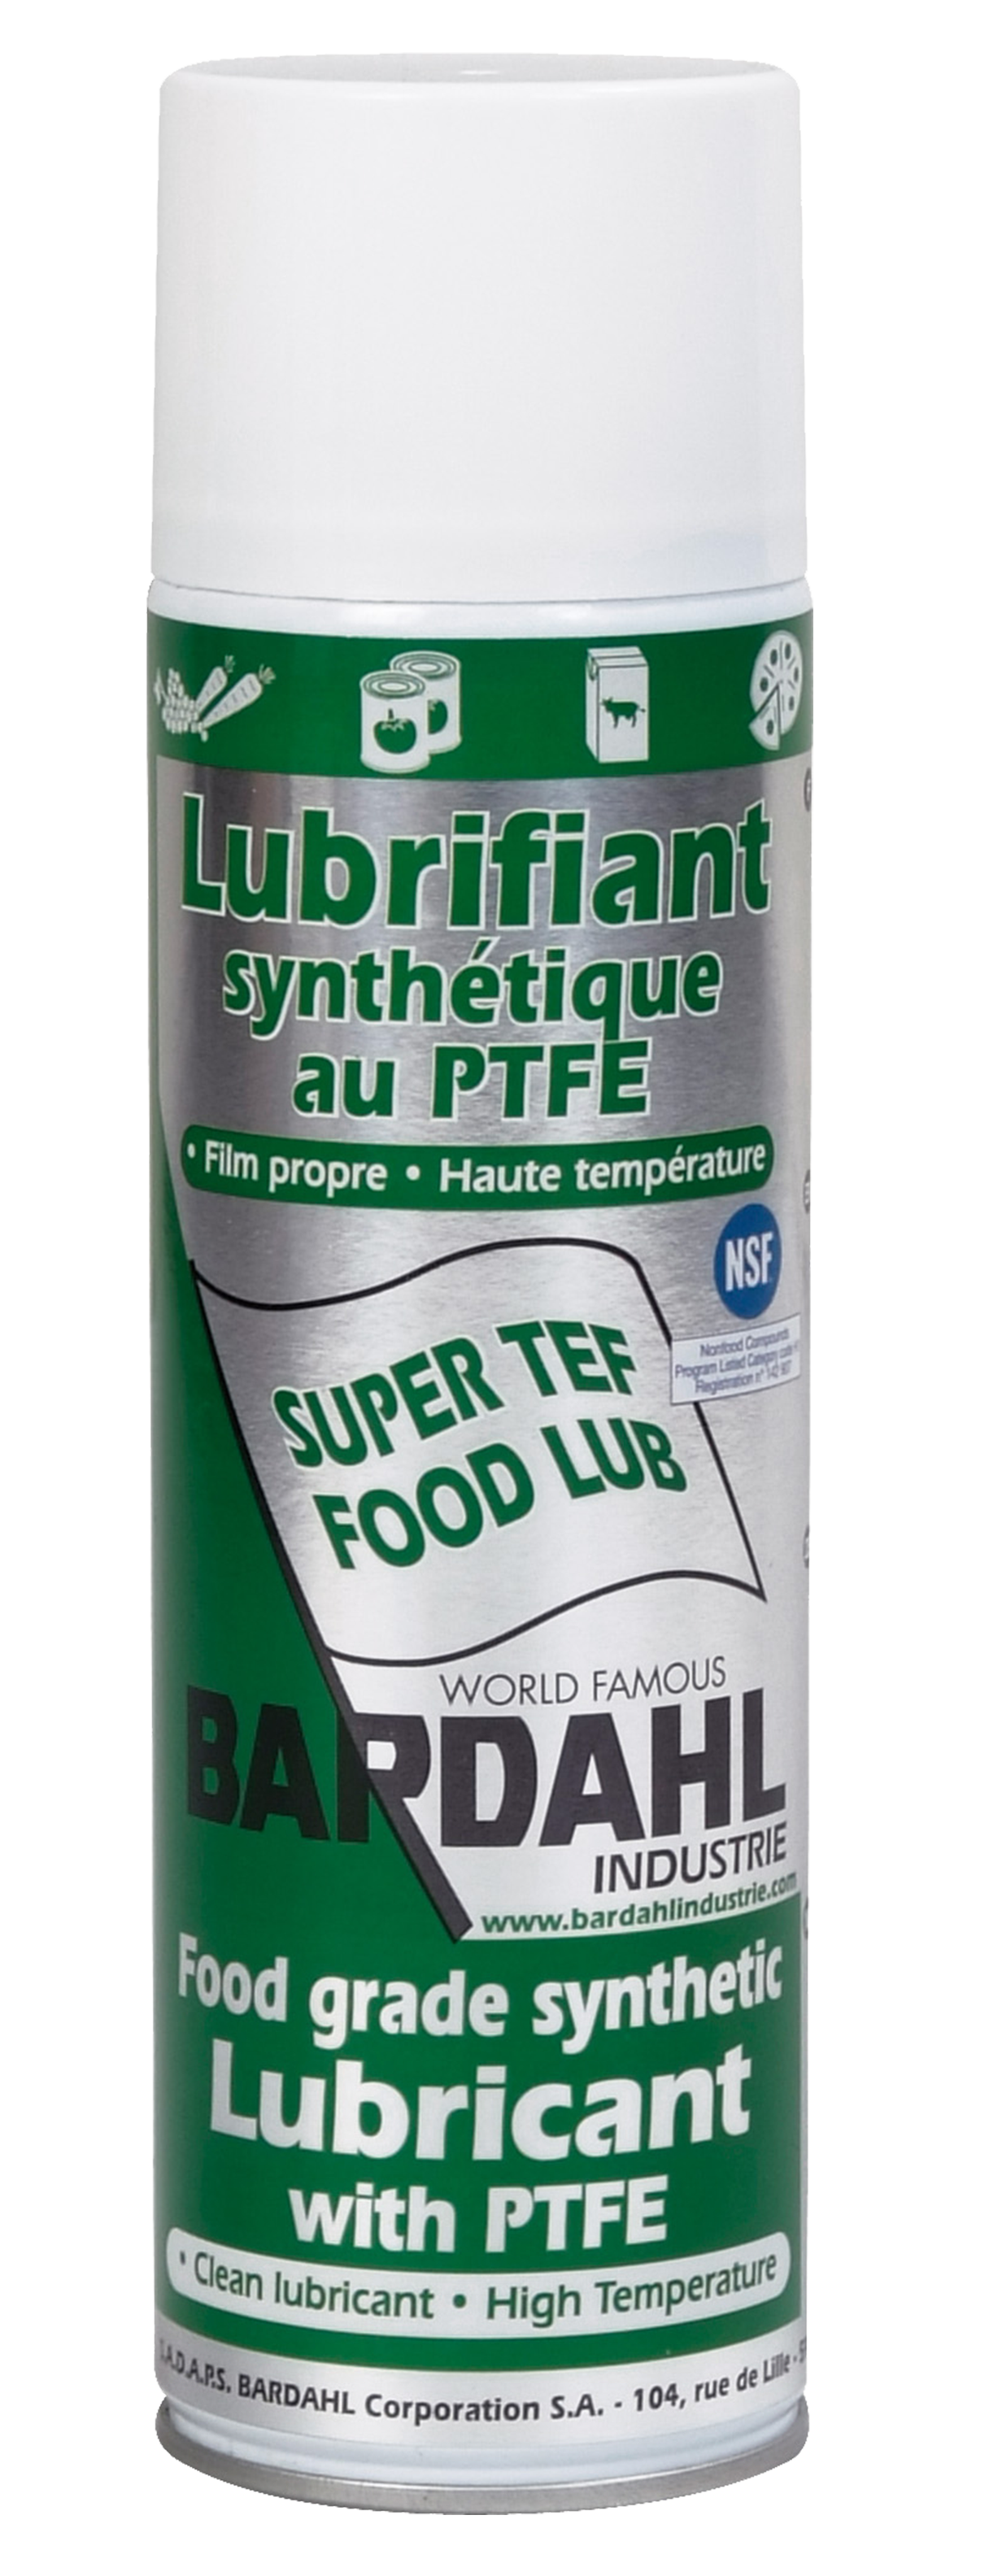 Super TF Food Lub + PTFE (NSF)